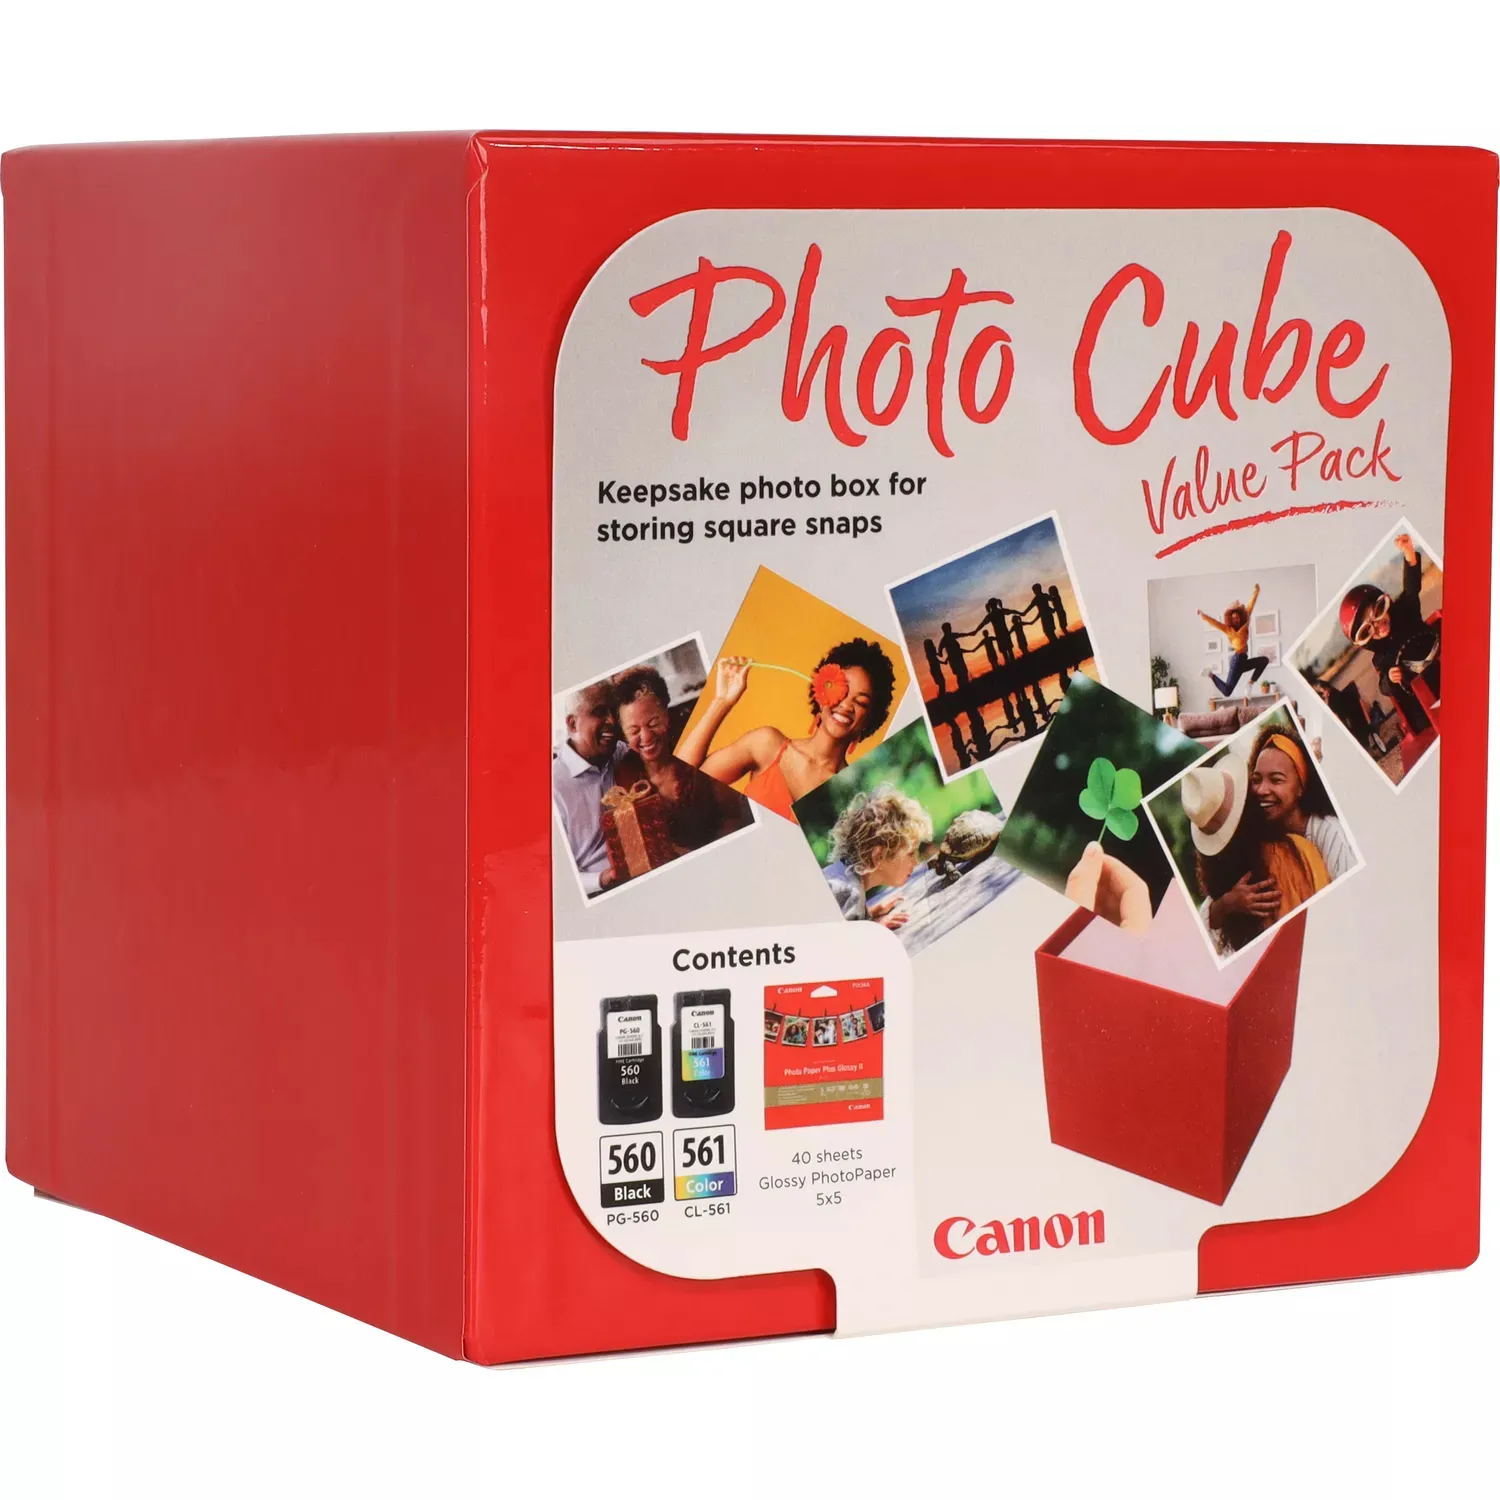 Achat CANON PG-560/CL-561 Ink Cartridge Photo Cube Value Pack au meilleur prix